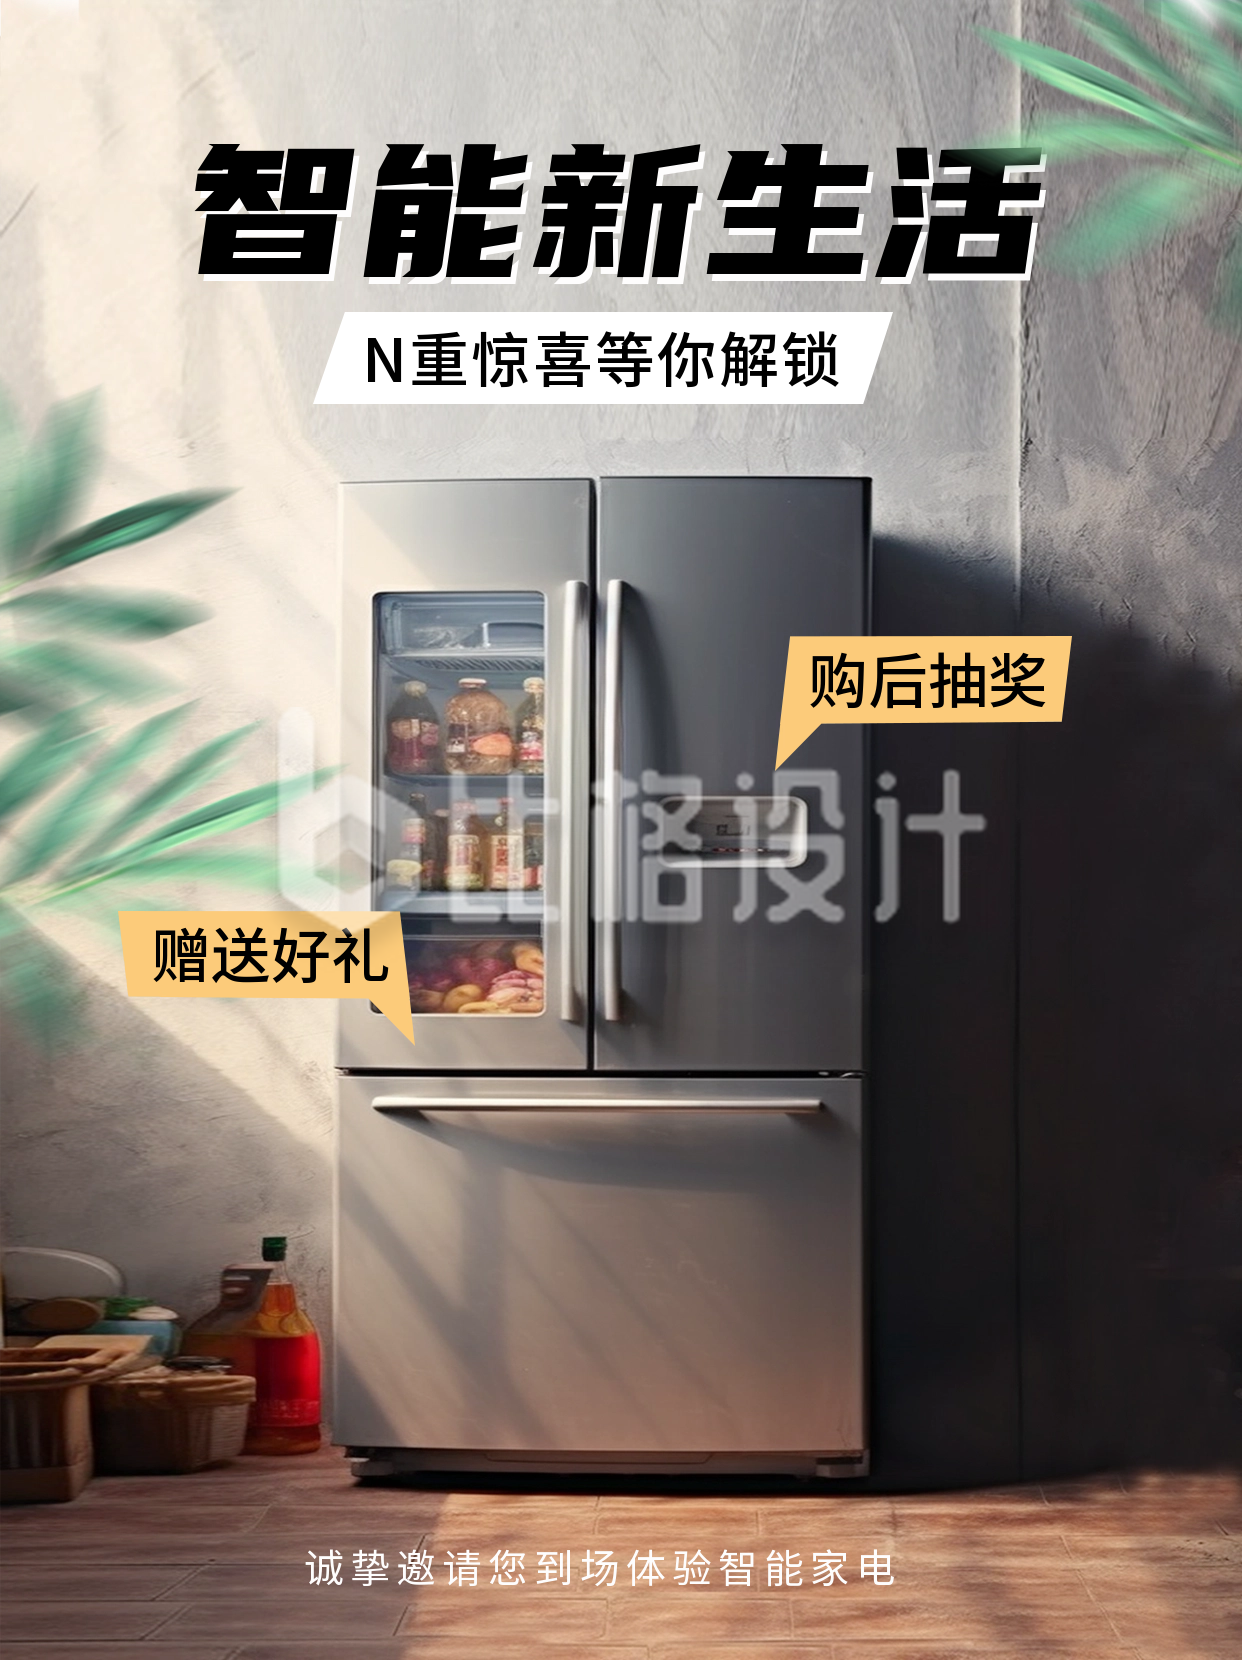 冰箱电器产品促销小红书封面